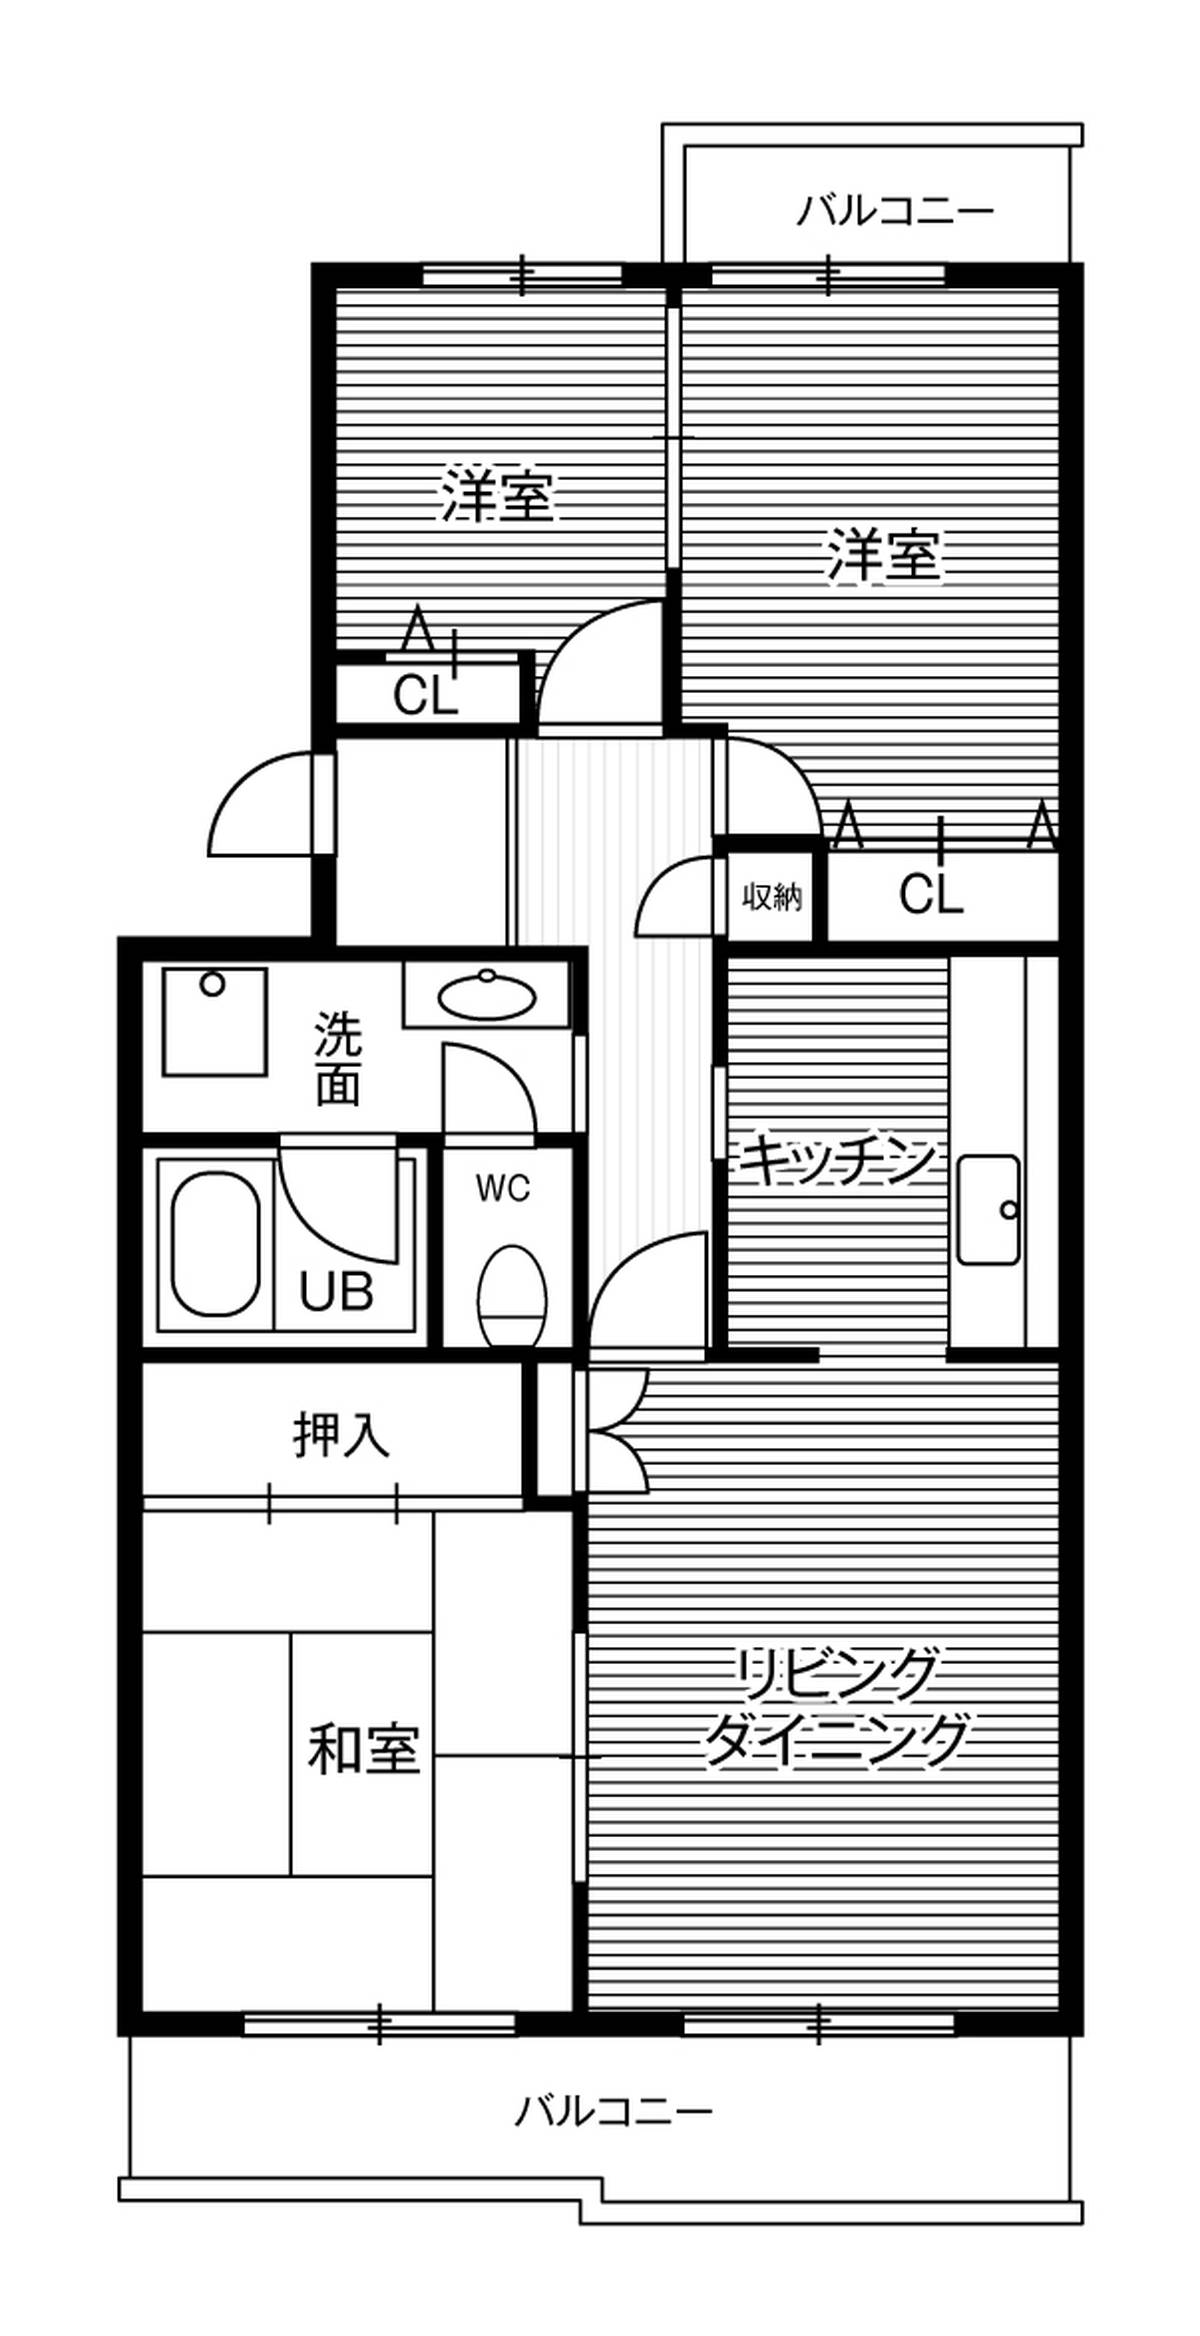 3LDK floorplan of Village House Narita Tamatsukuri in Narita-shi